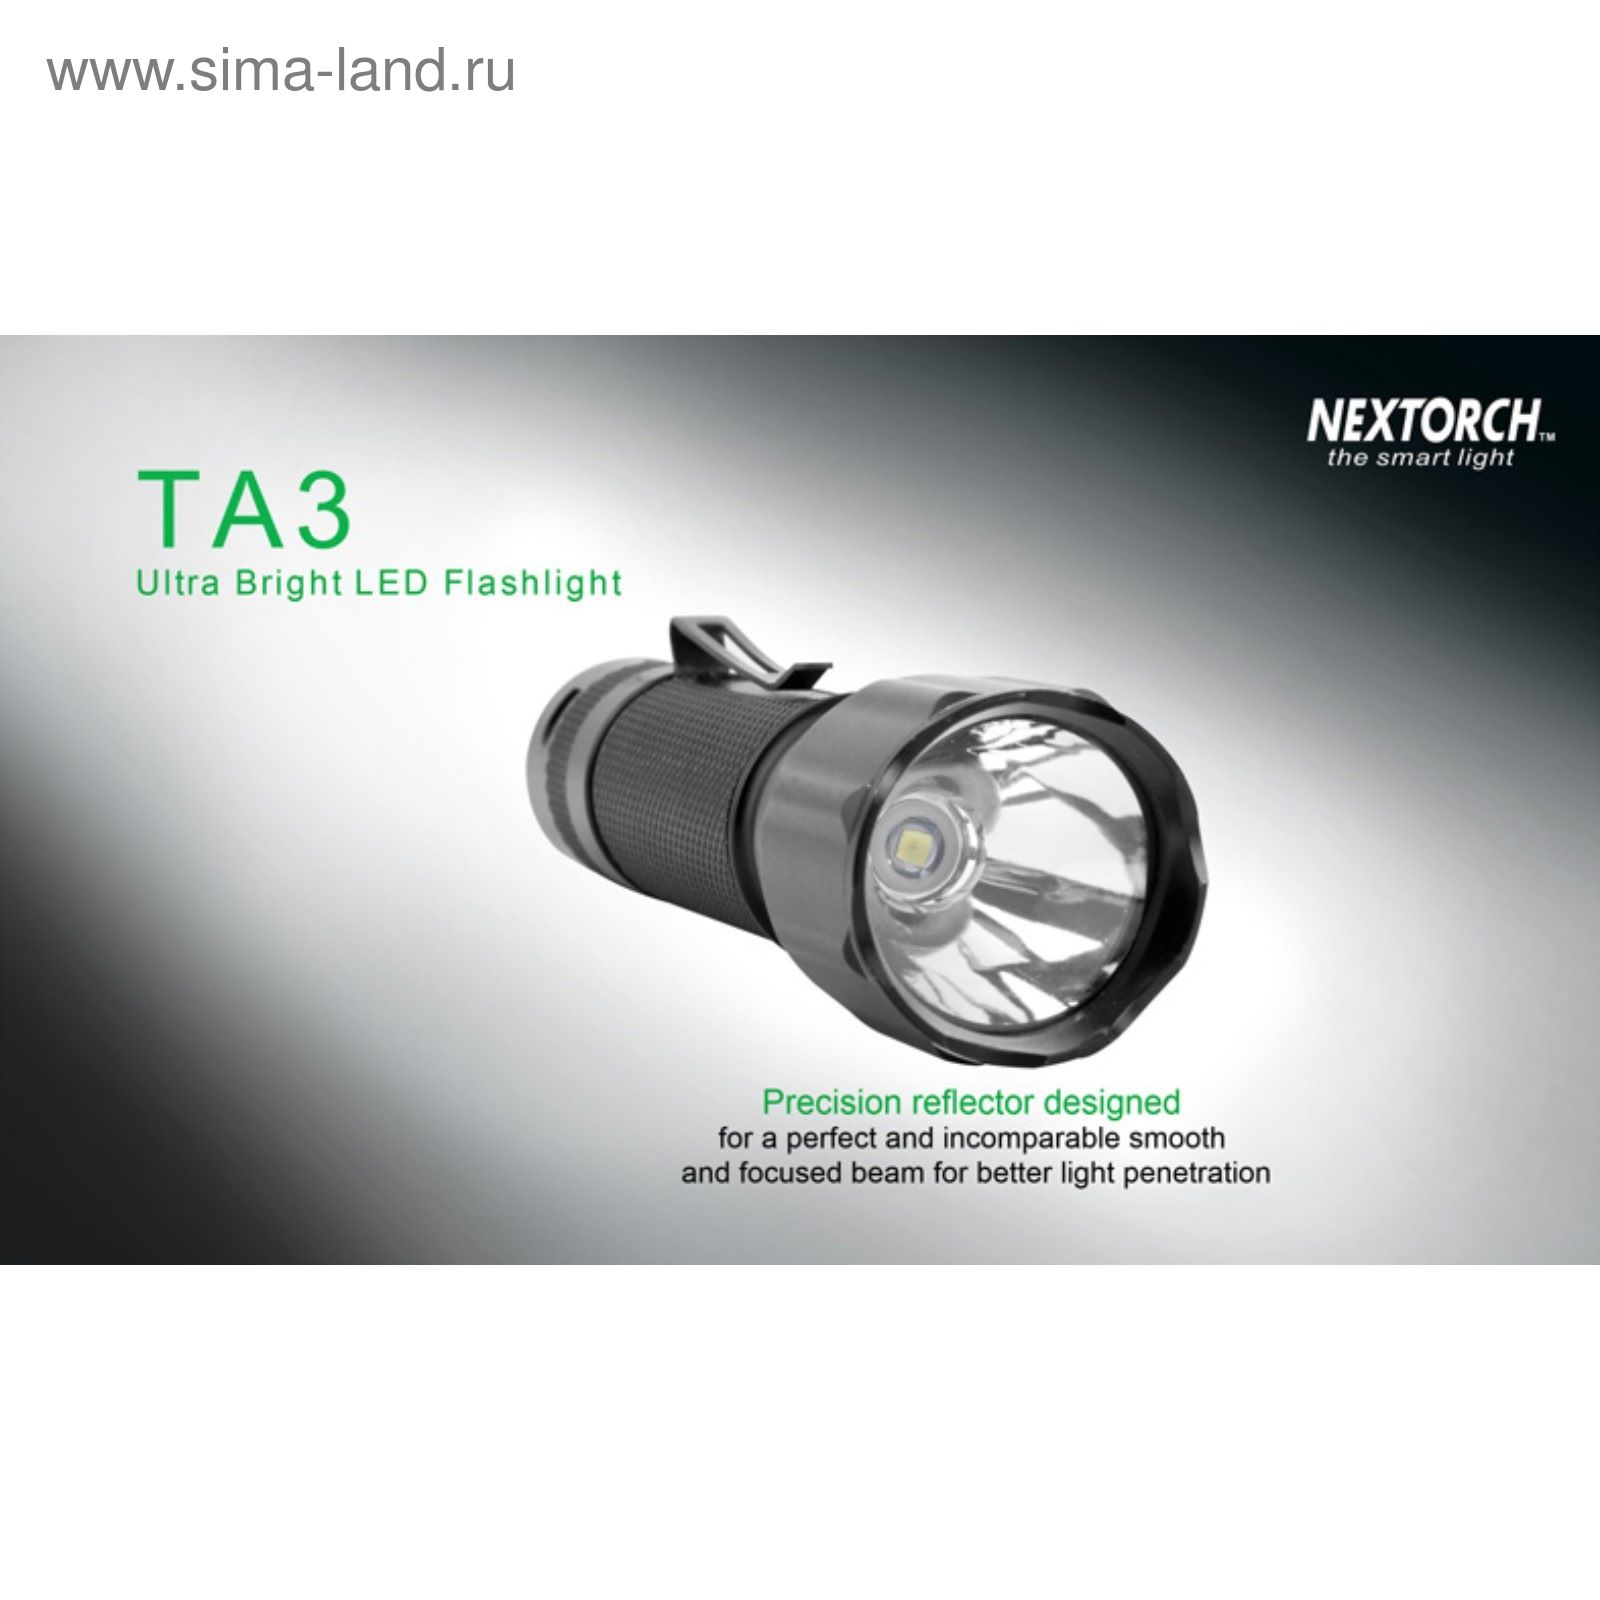 Подствольный фонарь TA3 светодиодный Cree LED 550 люмен, 6 режимов работы